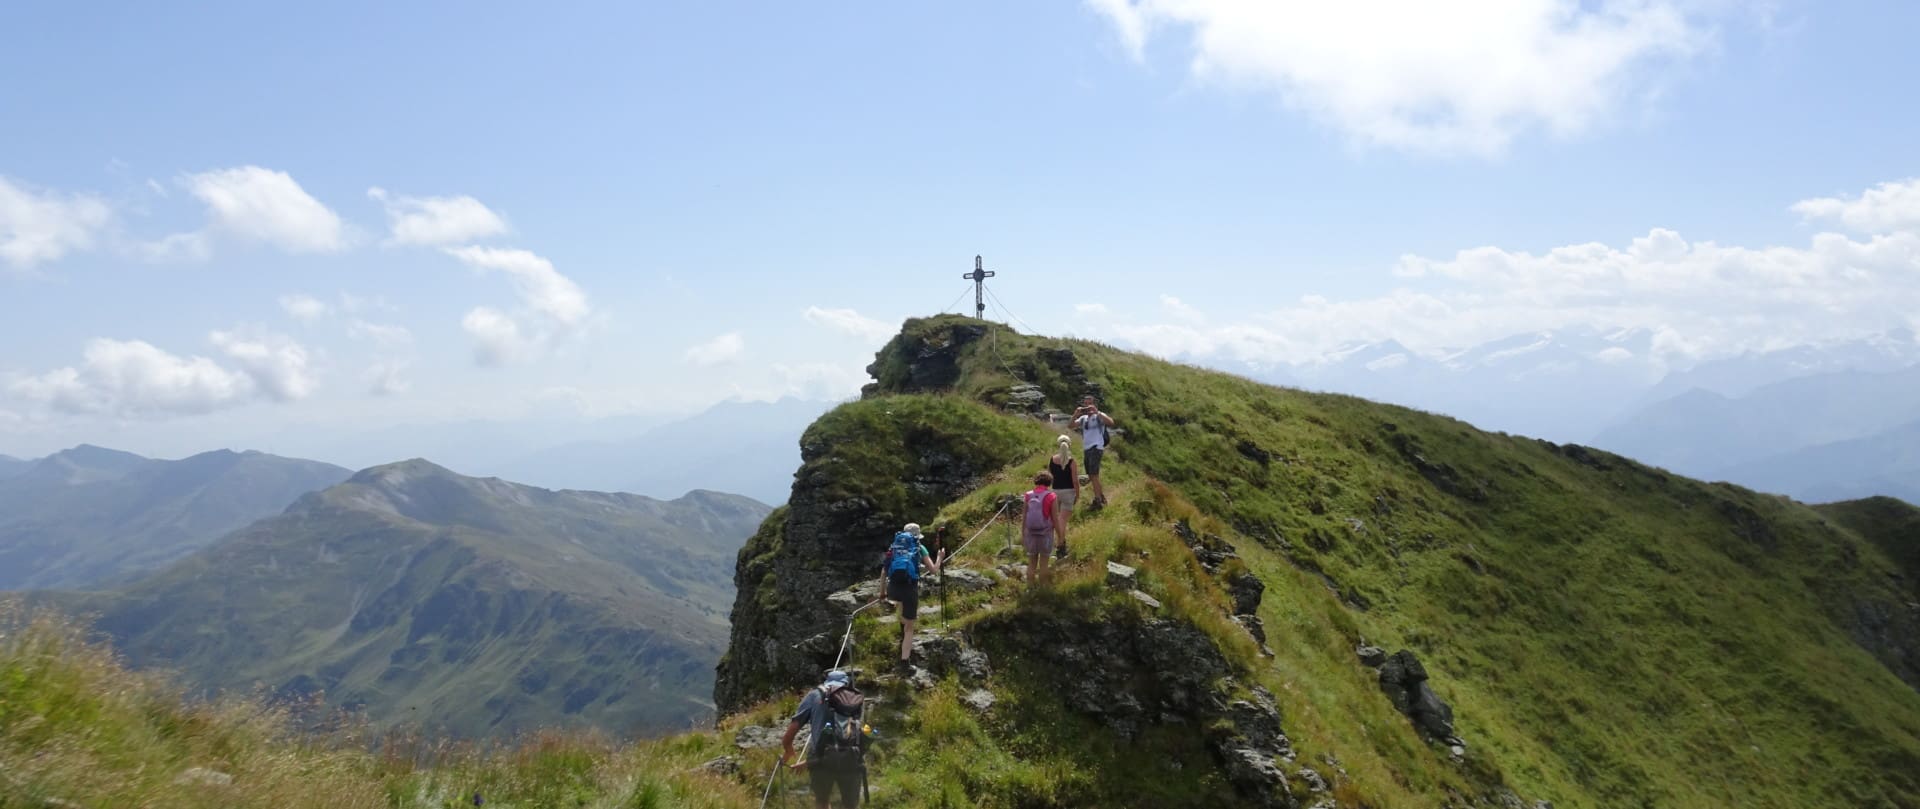 Wanderer auf dem Gipfel des Gaisstein genießen die Aussicht neben einem Kreuz, das hoch über dem Tal steht, mit einer grünen Bergkette im Hintergrund